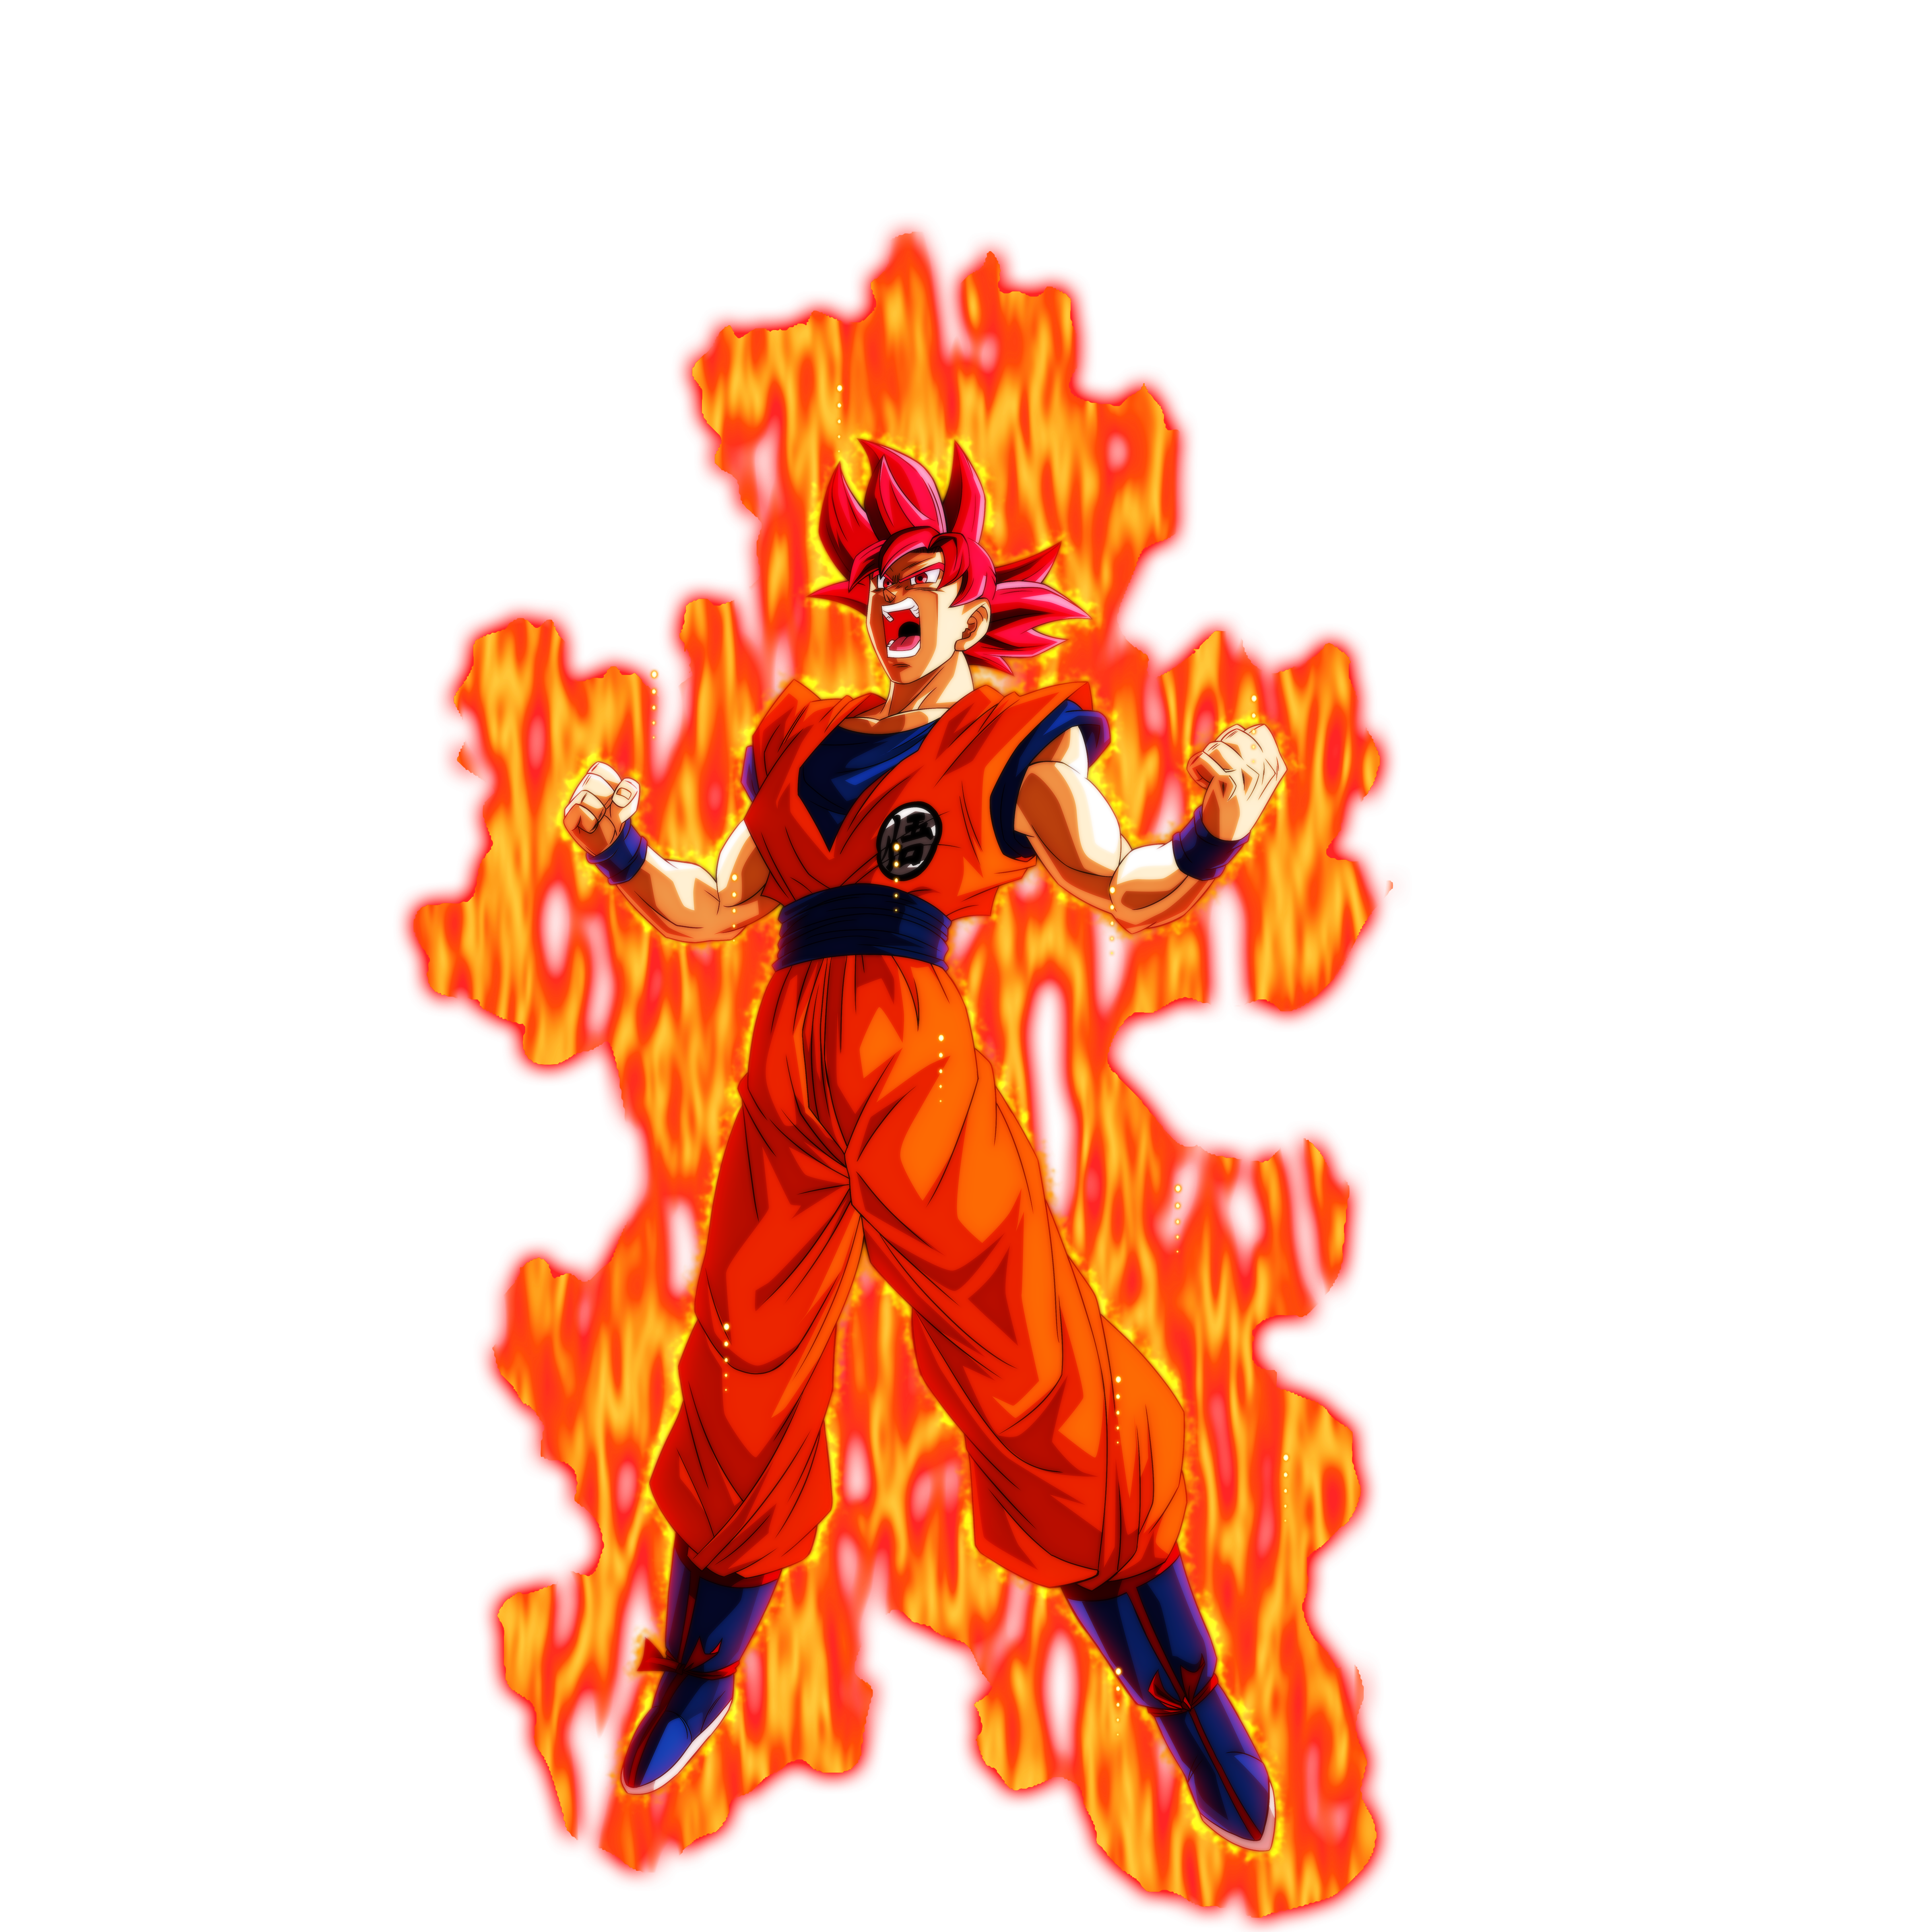 Universal Super Saiyan Blue Goku w/ Aura by BlackFlim on DeviantArt